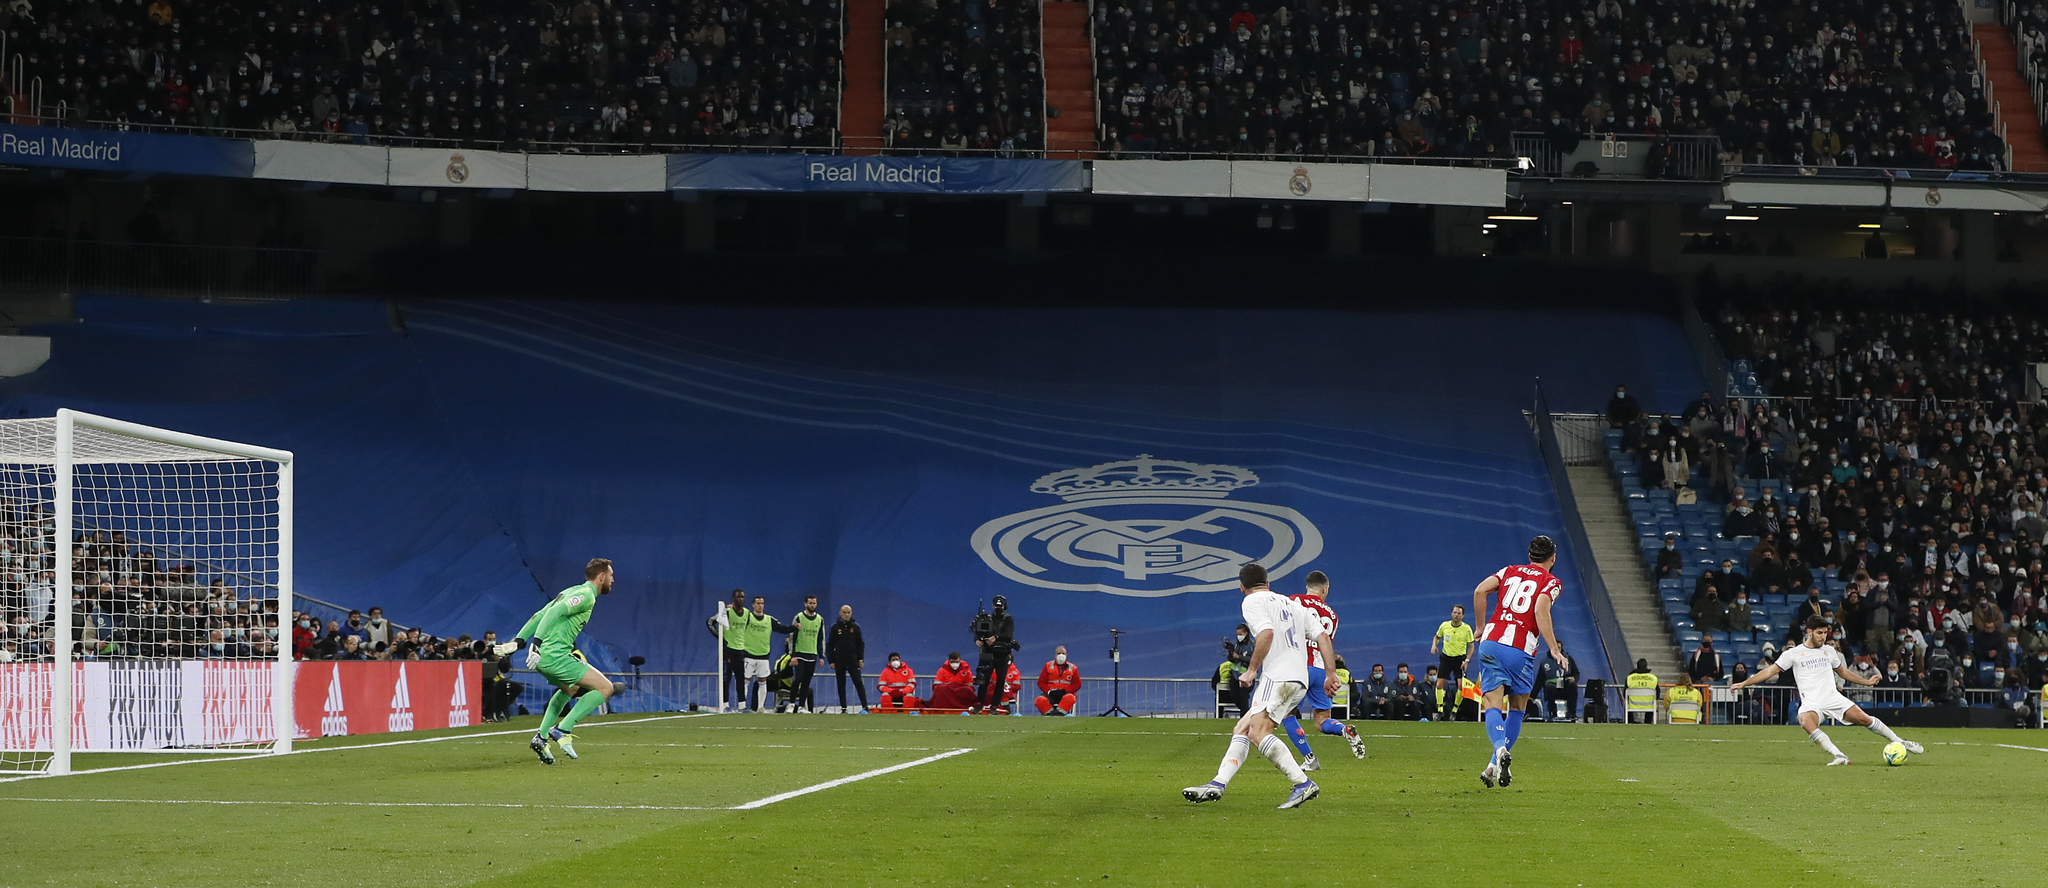 Gol de Asensio en el Real Madrid-Atlético